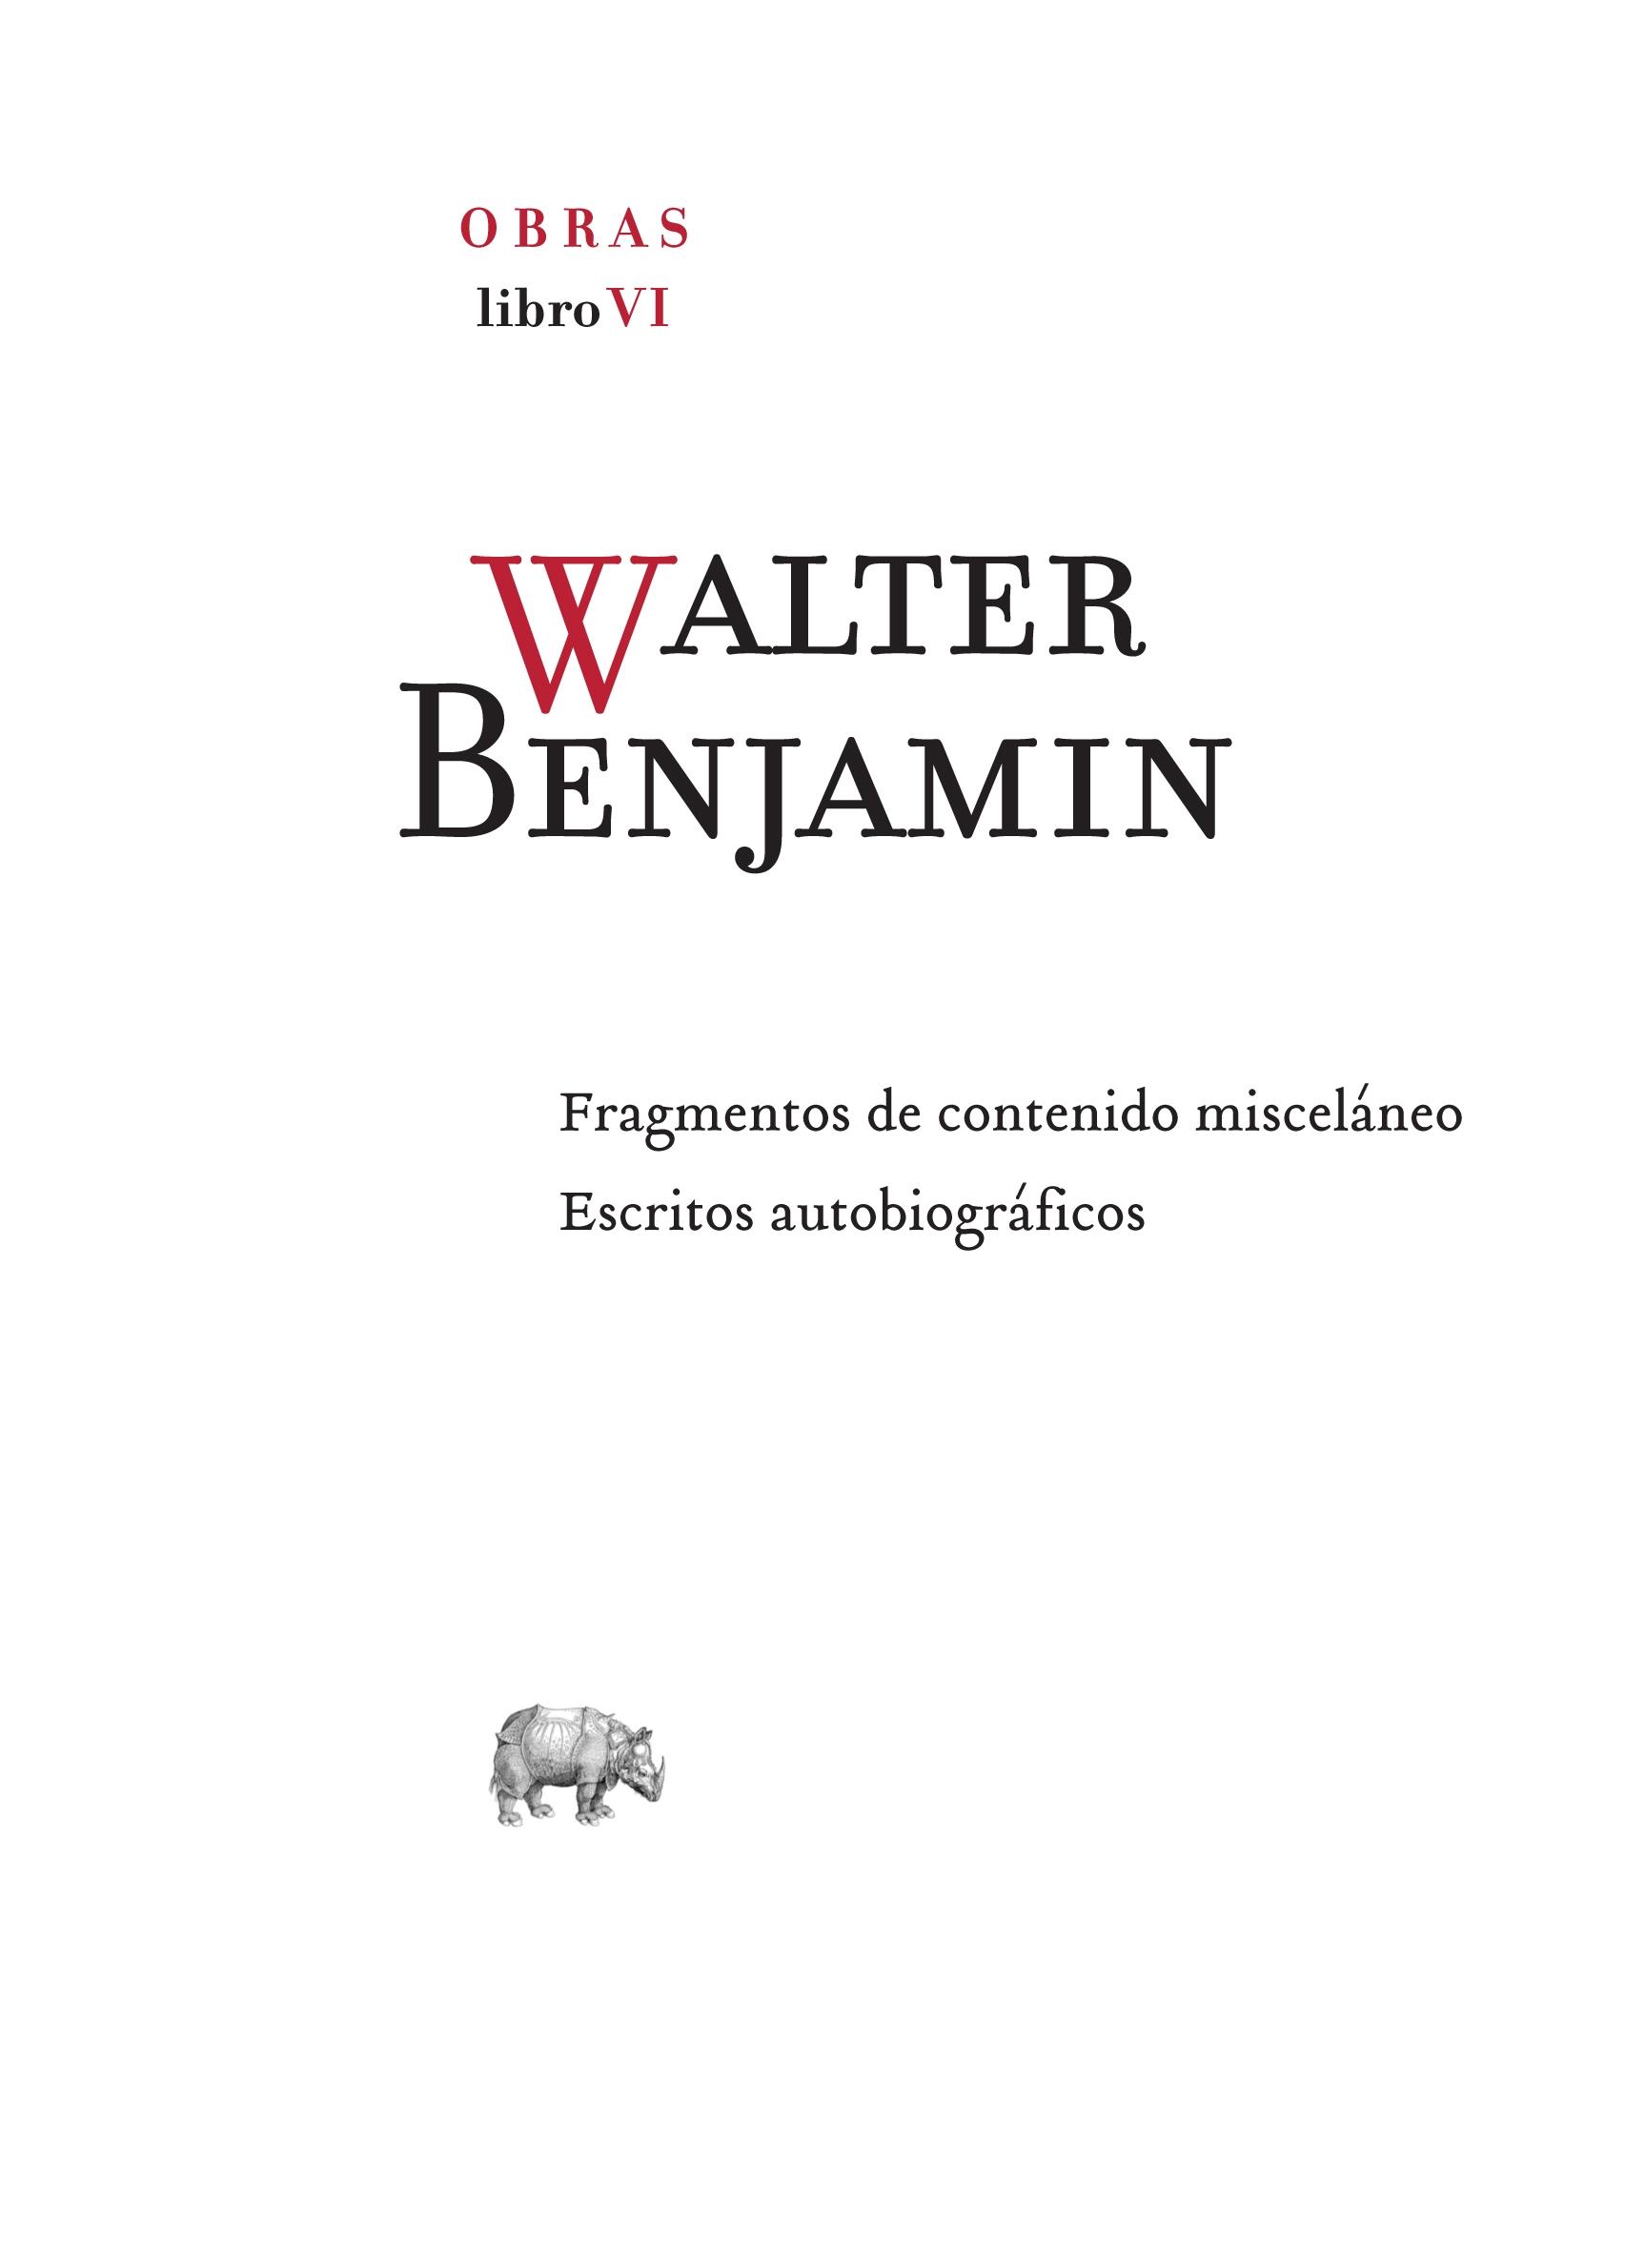 Obra completa. Libro VI "Fragmentos de contenido misceláneo  // Escritos autobiográficos". 